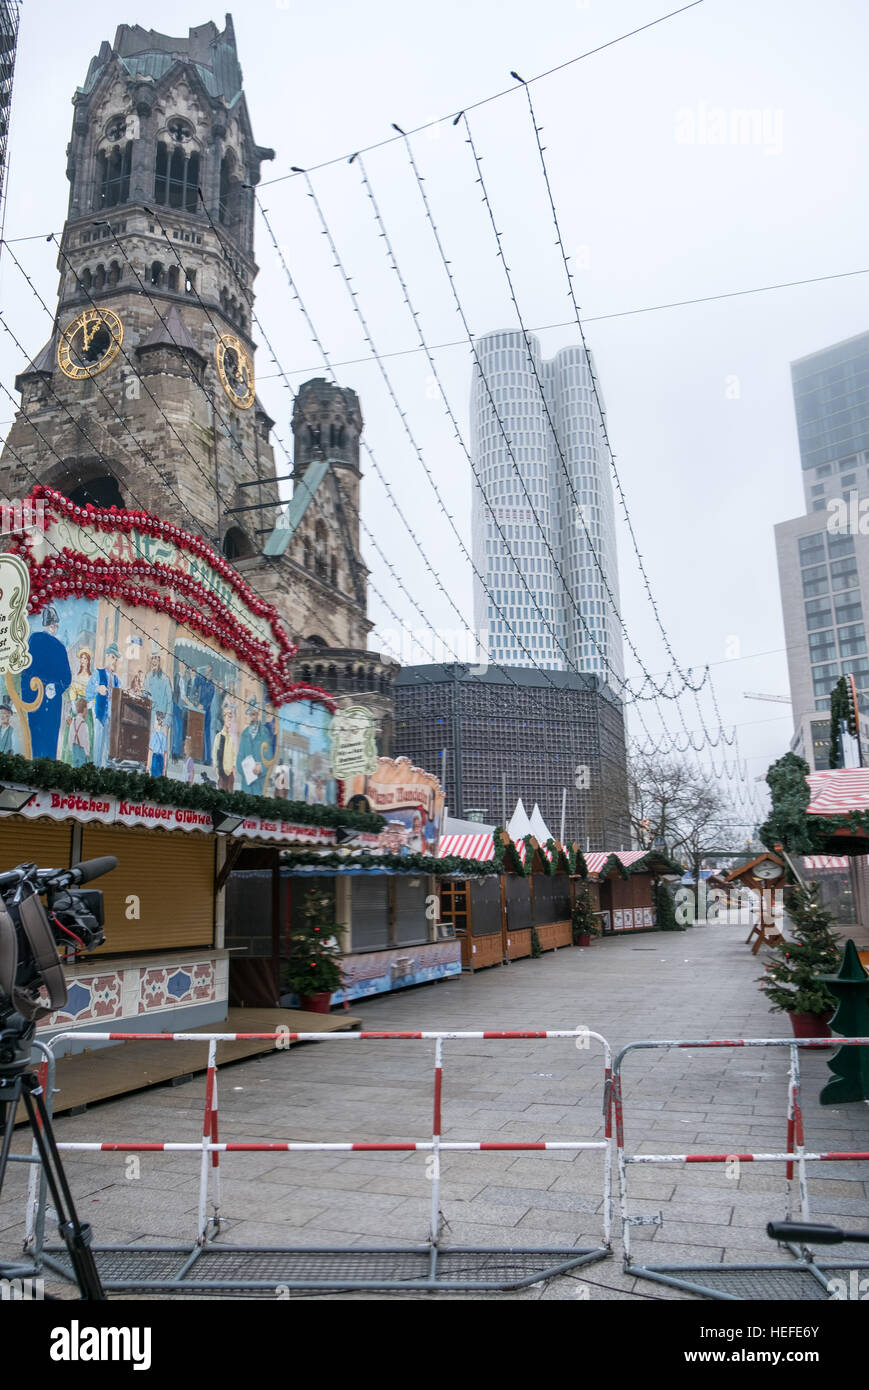 La scène du crime au Marché de Noël à Berlin, le jour après l'attaque terroriste. Banque D'Images